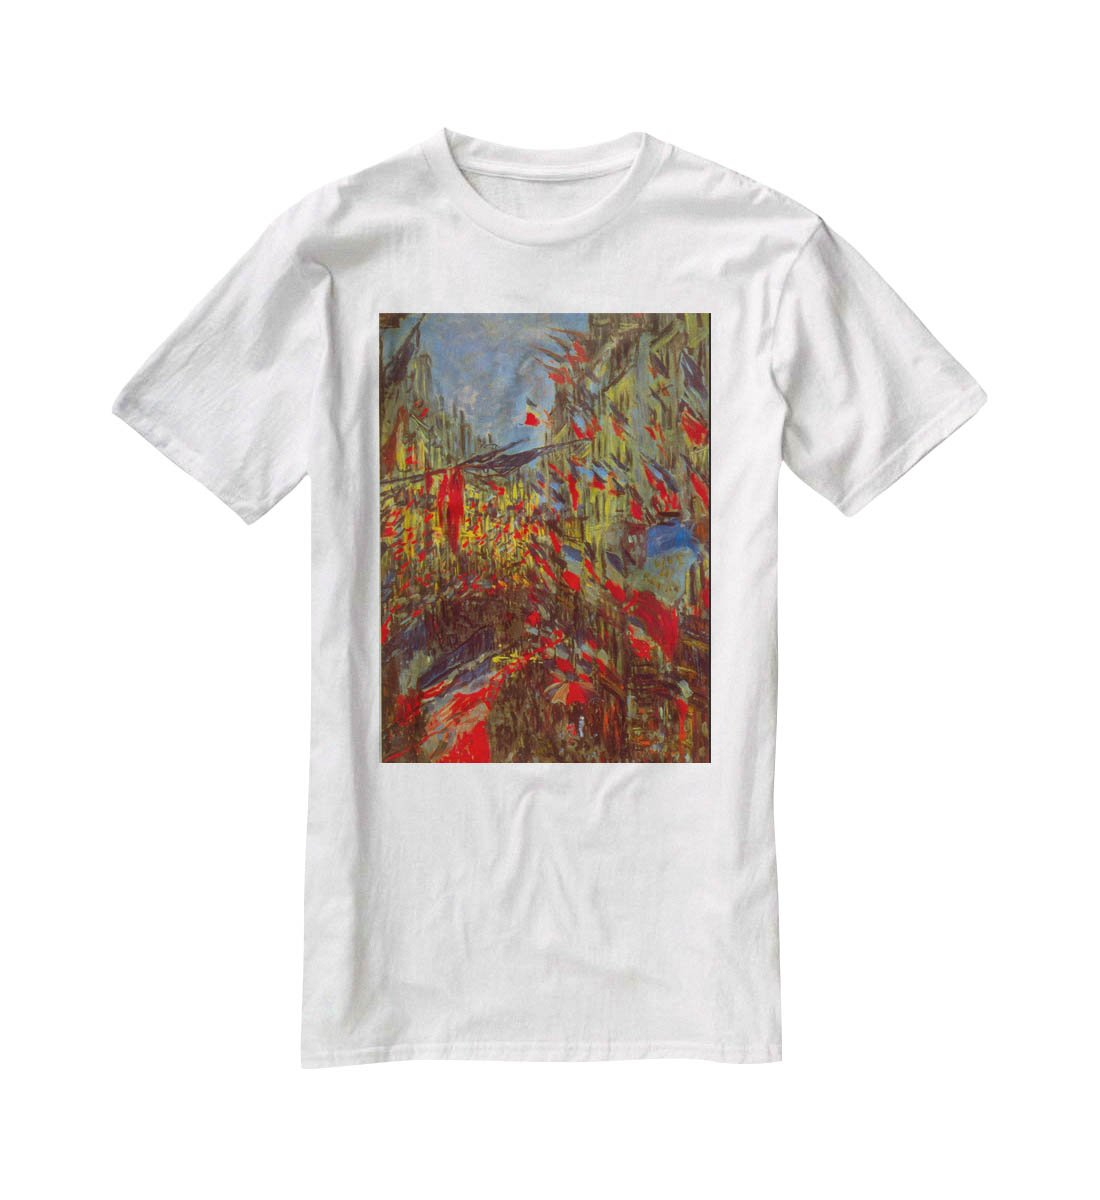 Festivities by Monet T-Shirt - Canvas Art Rocks - 5